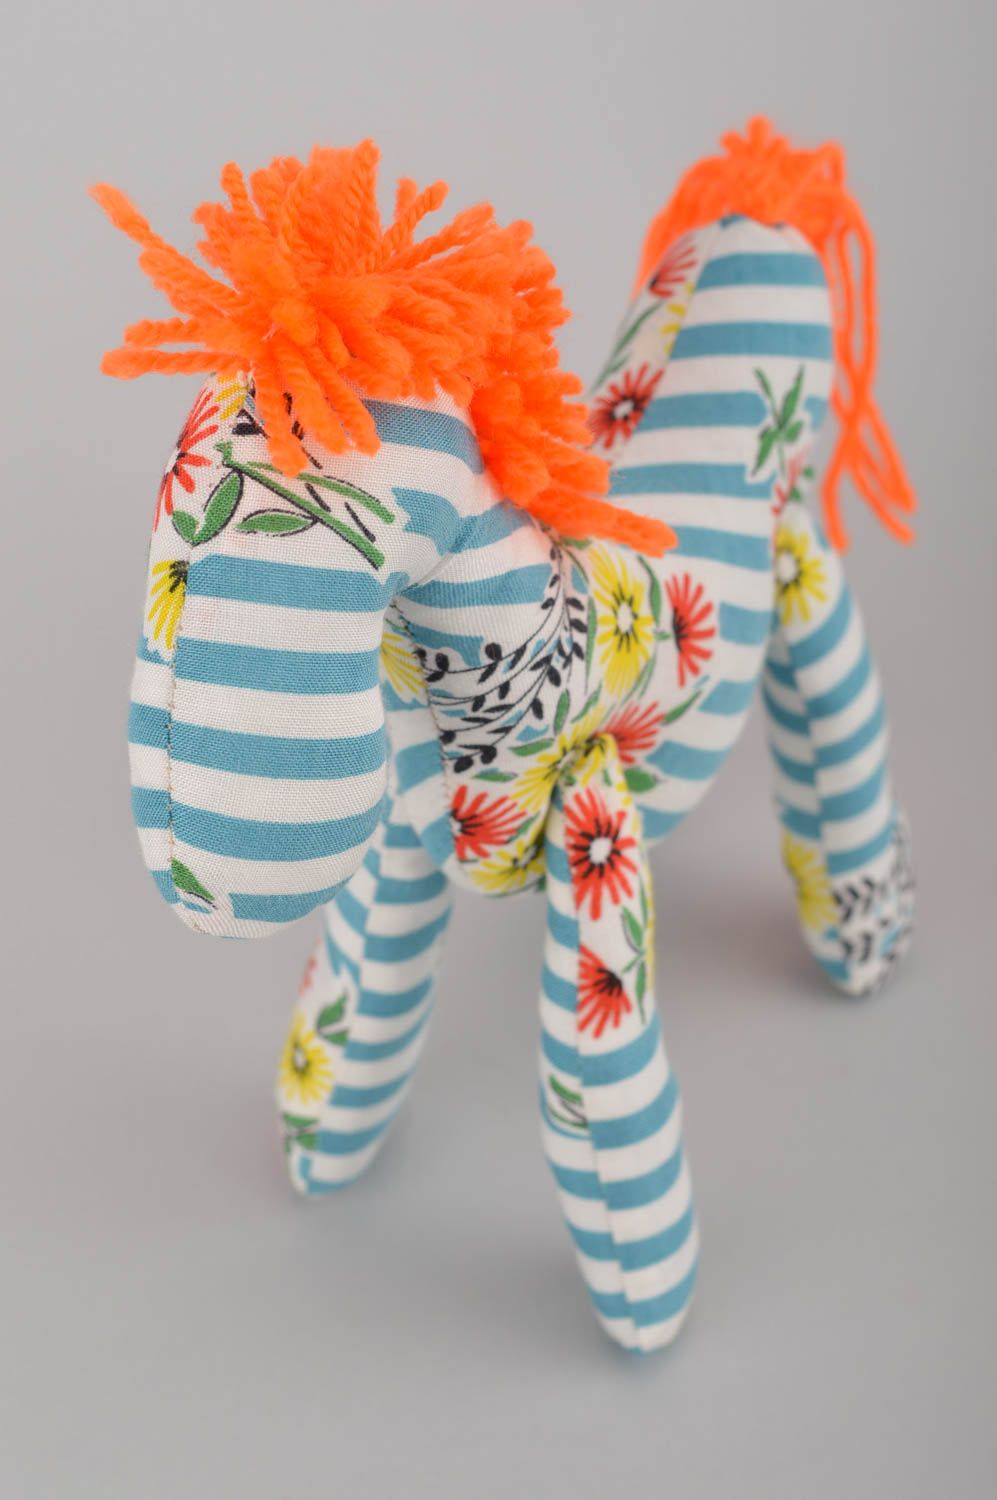 Оригинальная мягкая игрушка ручной работы разноцветная лошадка из хлопка фото 5